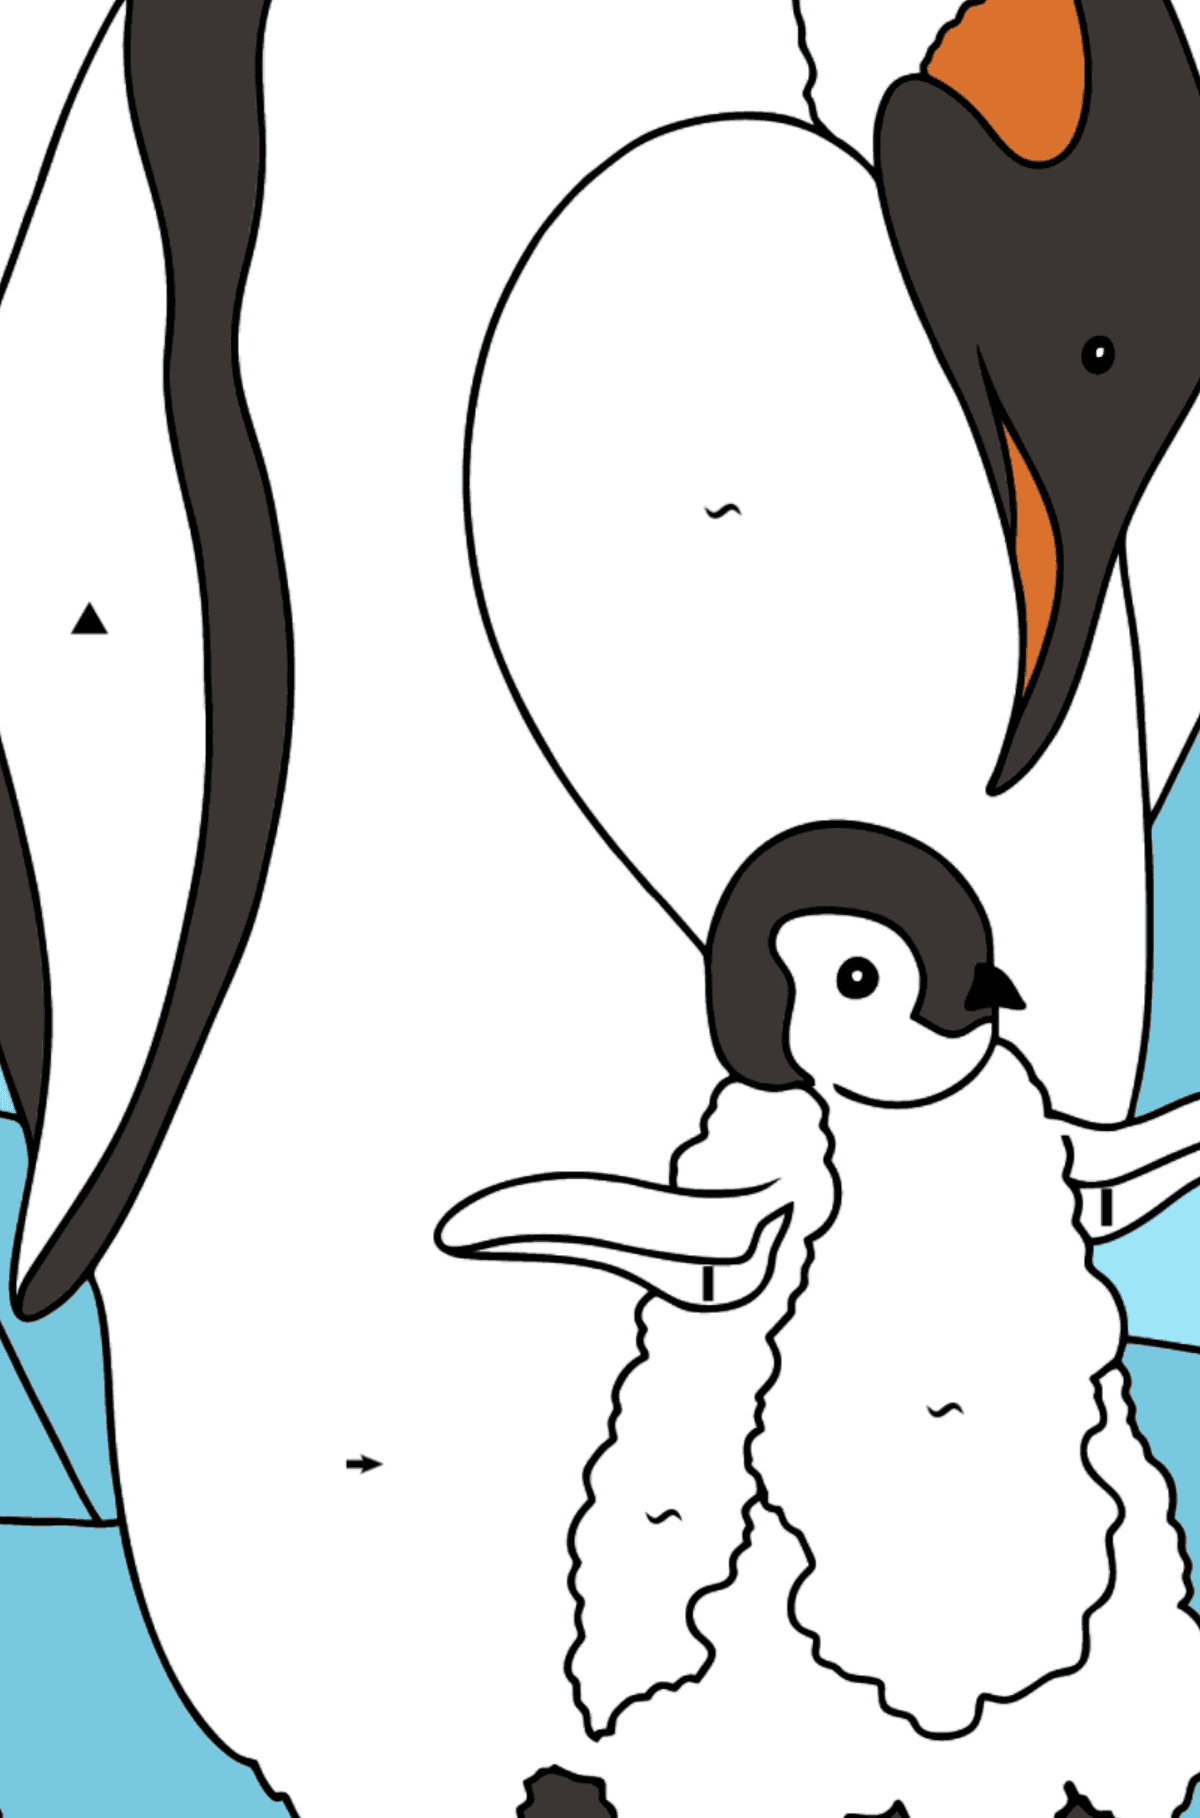 Coloriage - Un pingouin avec un bébé - Coloriage par Symboles pour les Enfants